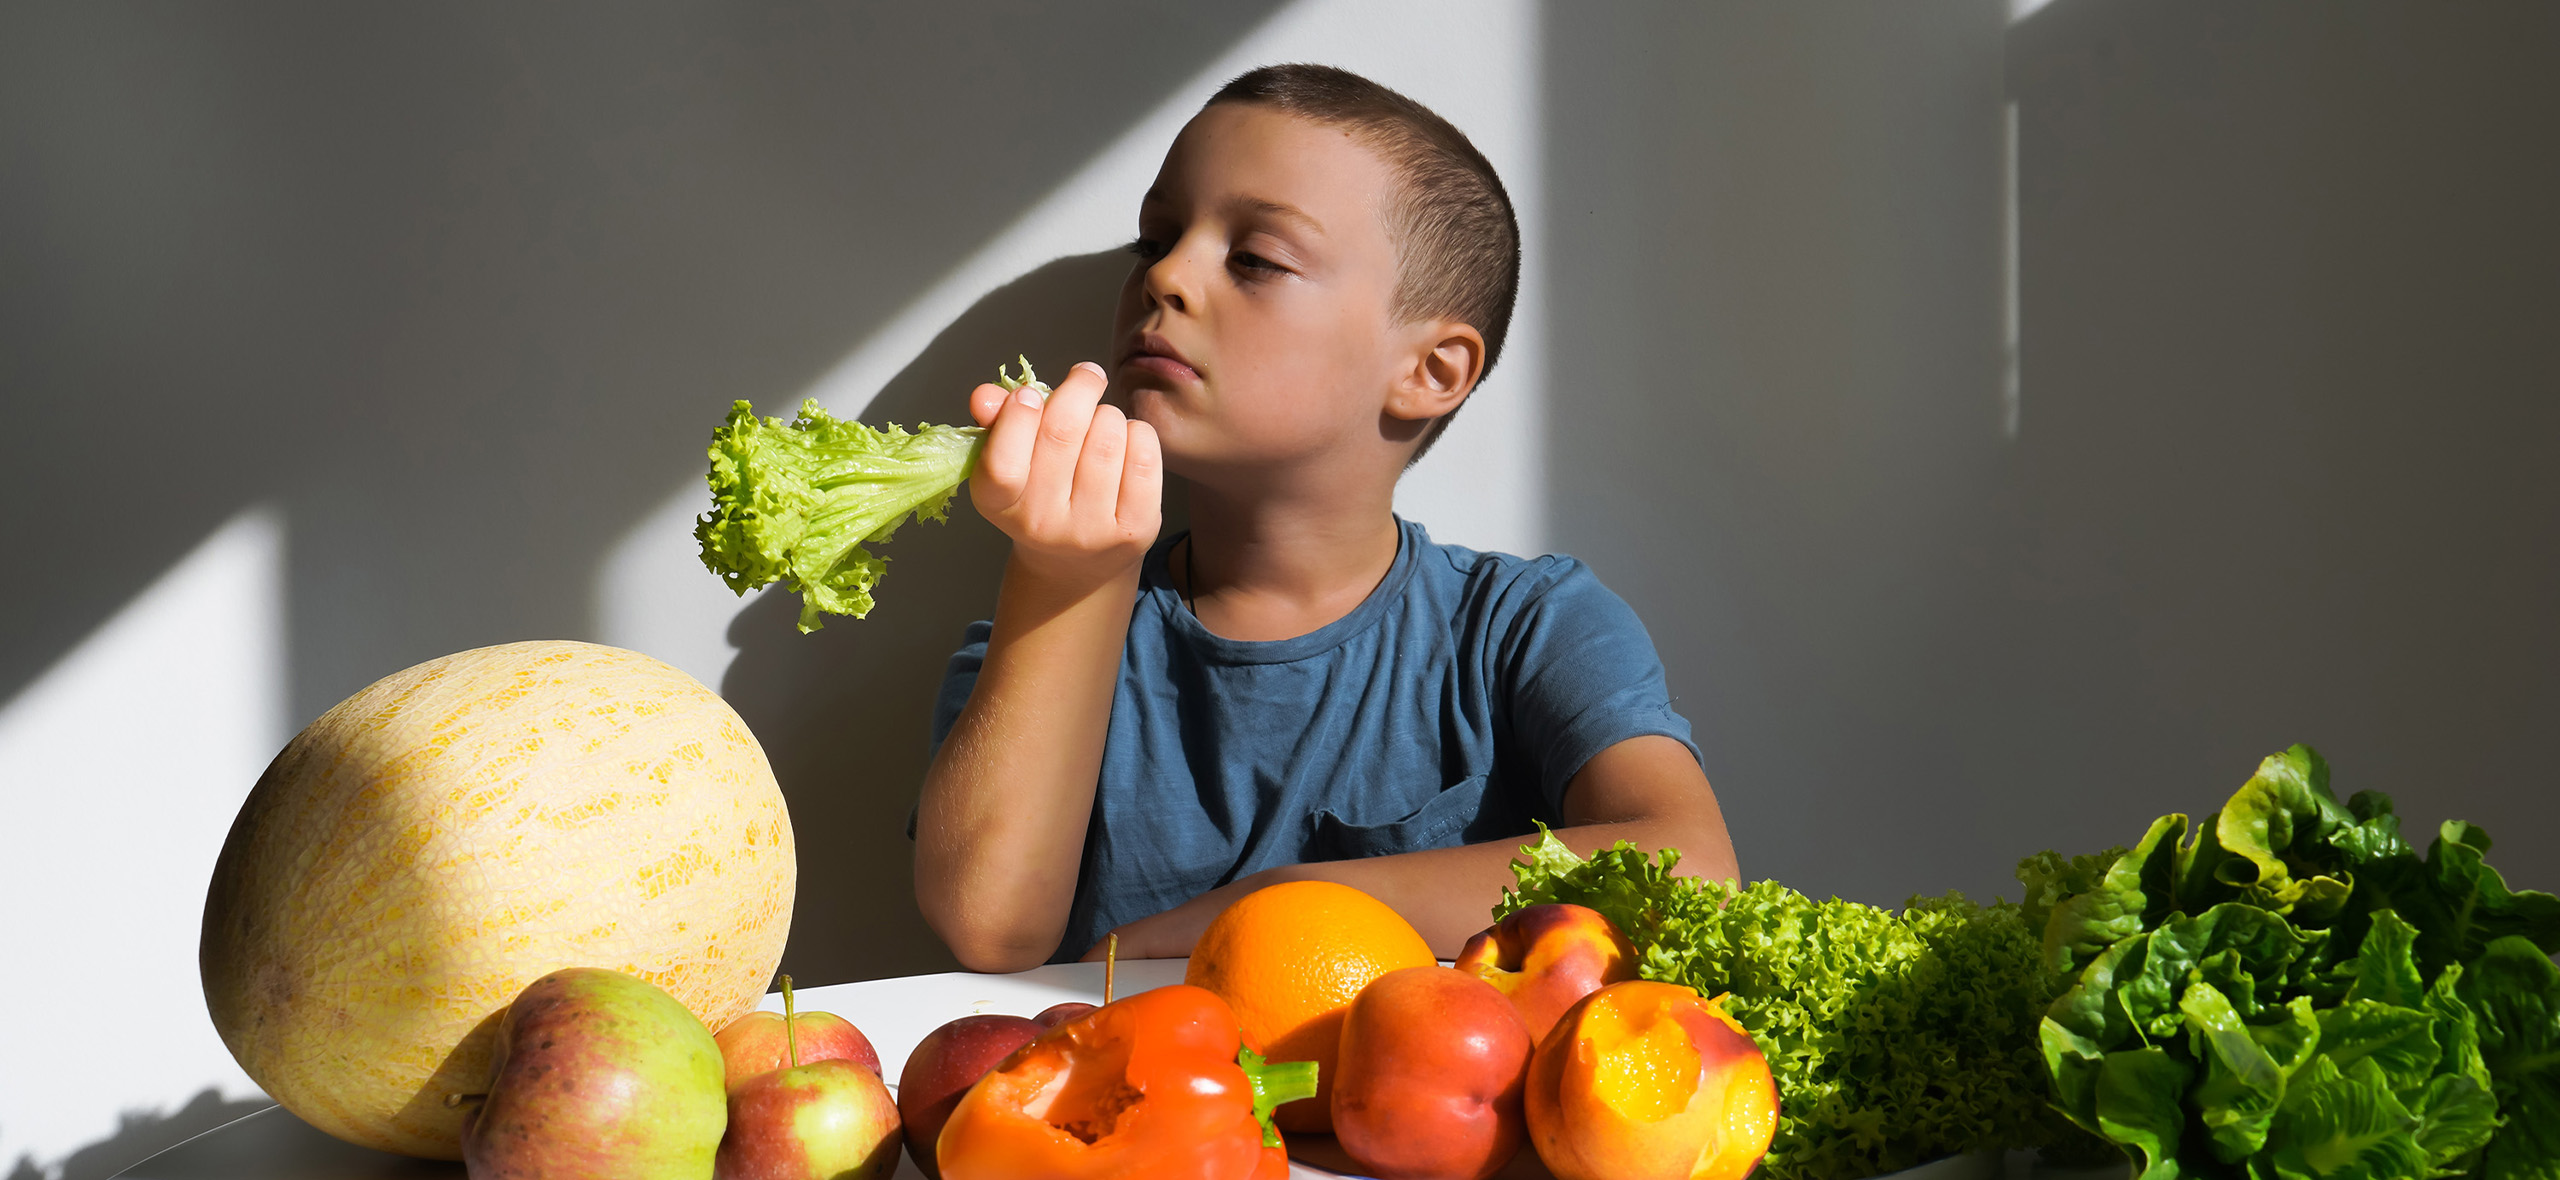 Ребенок не хочет есть овощи: что делать?. Магазин 